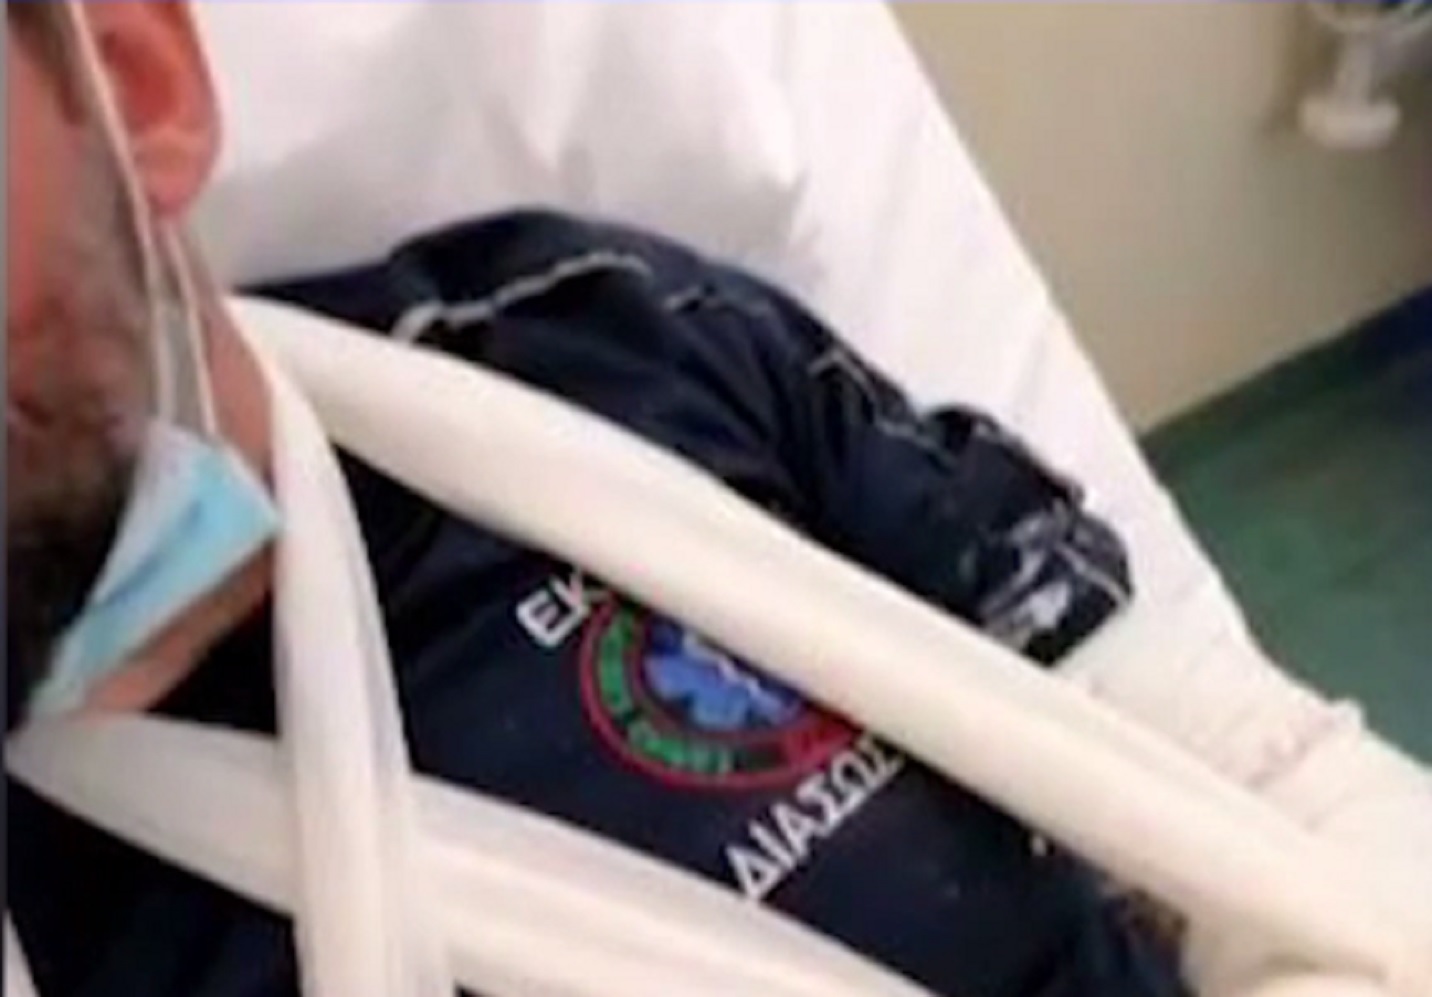 Σαλαμίνα: «Έχω τρόμο, ήταν δολοφονική επίθεση» – Συγκλονίζει ο διασώστης του ΕΚΑΒ που ασθενής του έσπασε τα χέρια